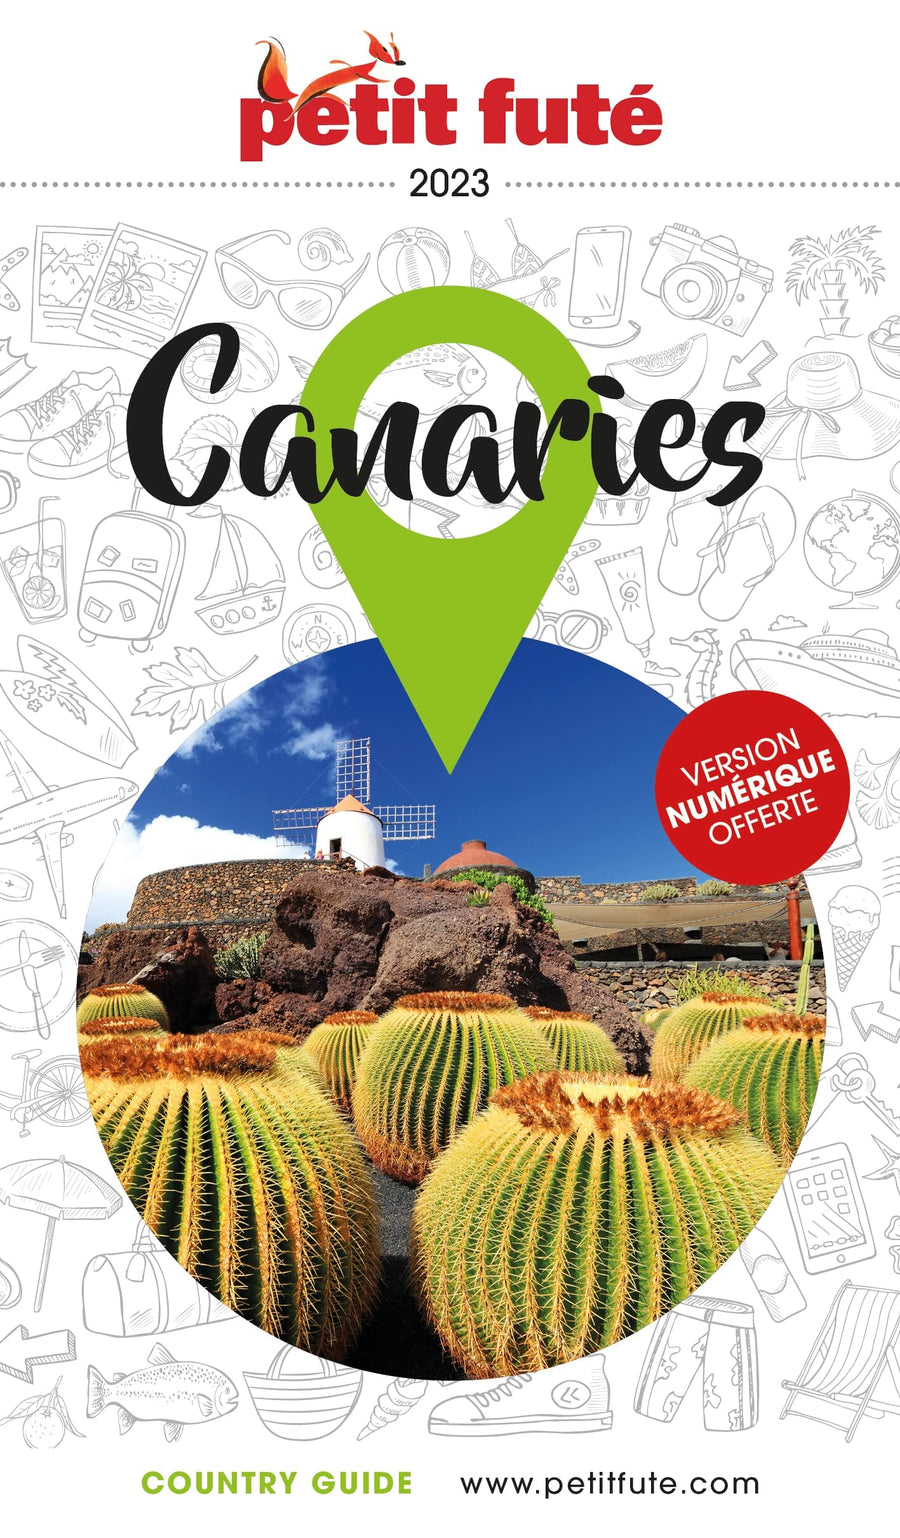 Guide de voyage - Canaries 2023 | Petit Futé guide de voyage Petit Futé 